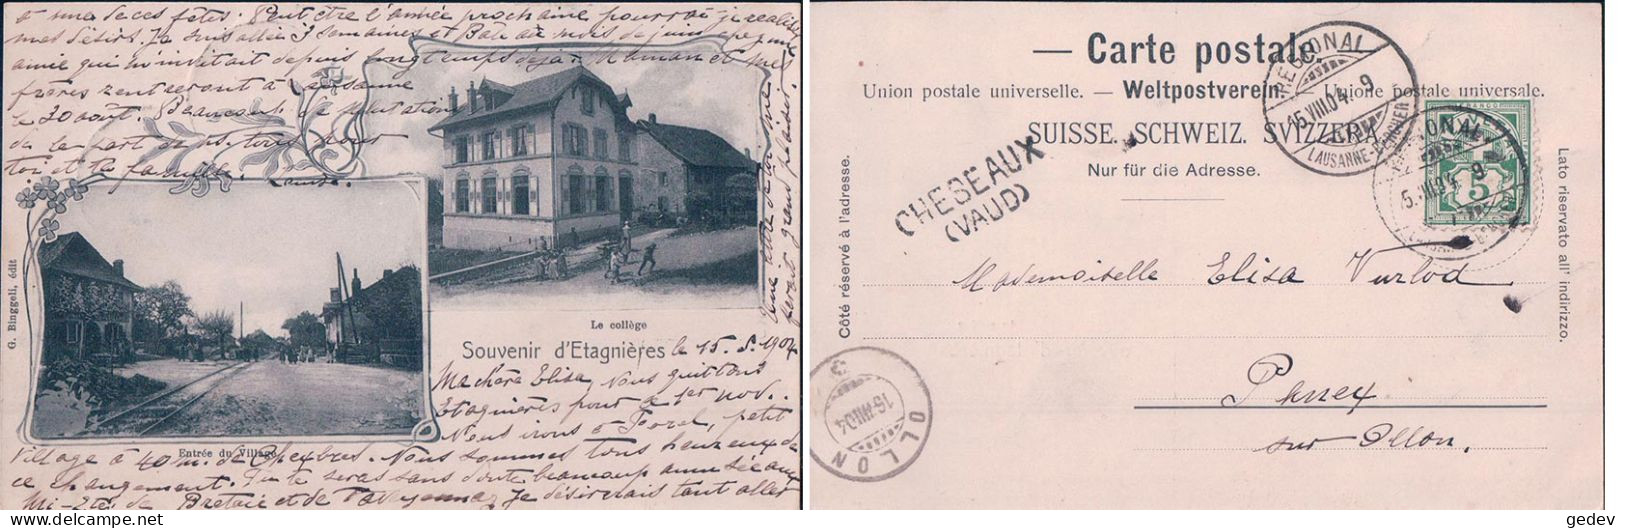 Etagnières VD, Chemin De Fer, Collège + Cachet Linéaire "CHESEAUX VAUD" Et Cachet "Lausanne- Bercher" (15.8.1904) - Bercher